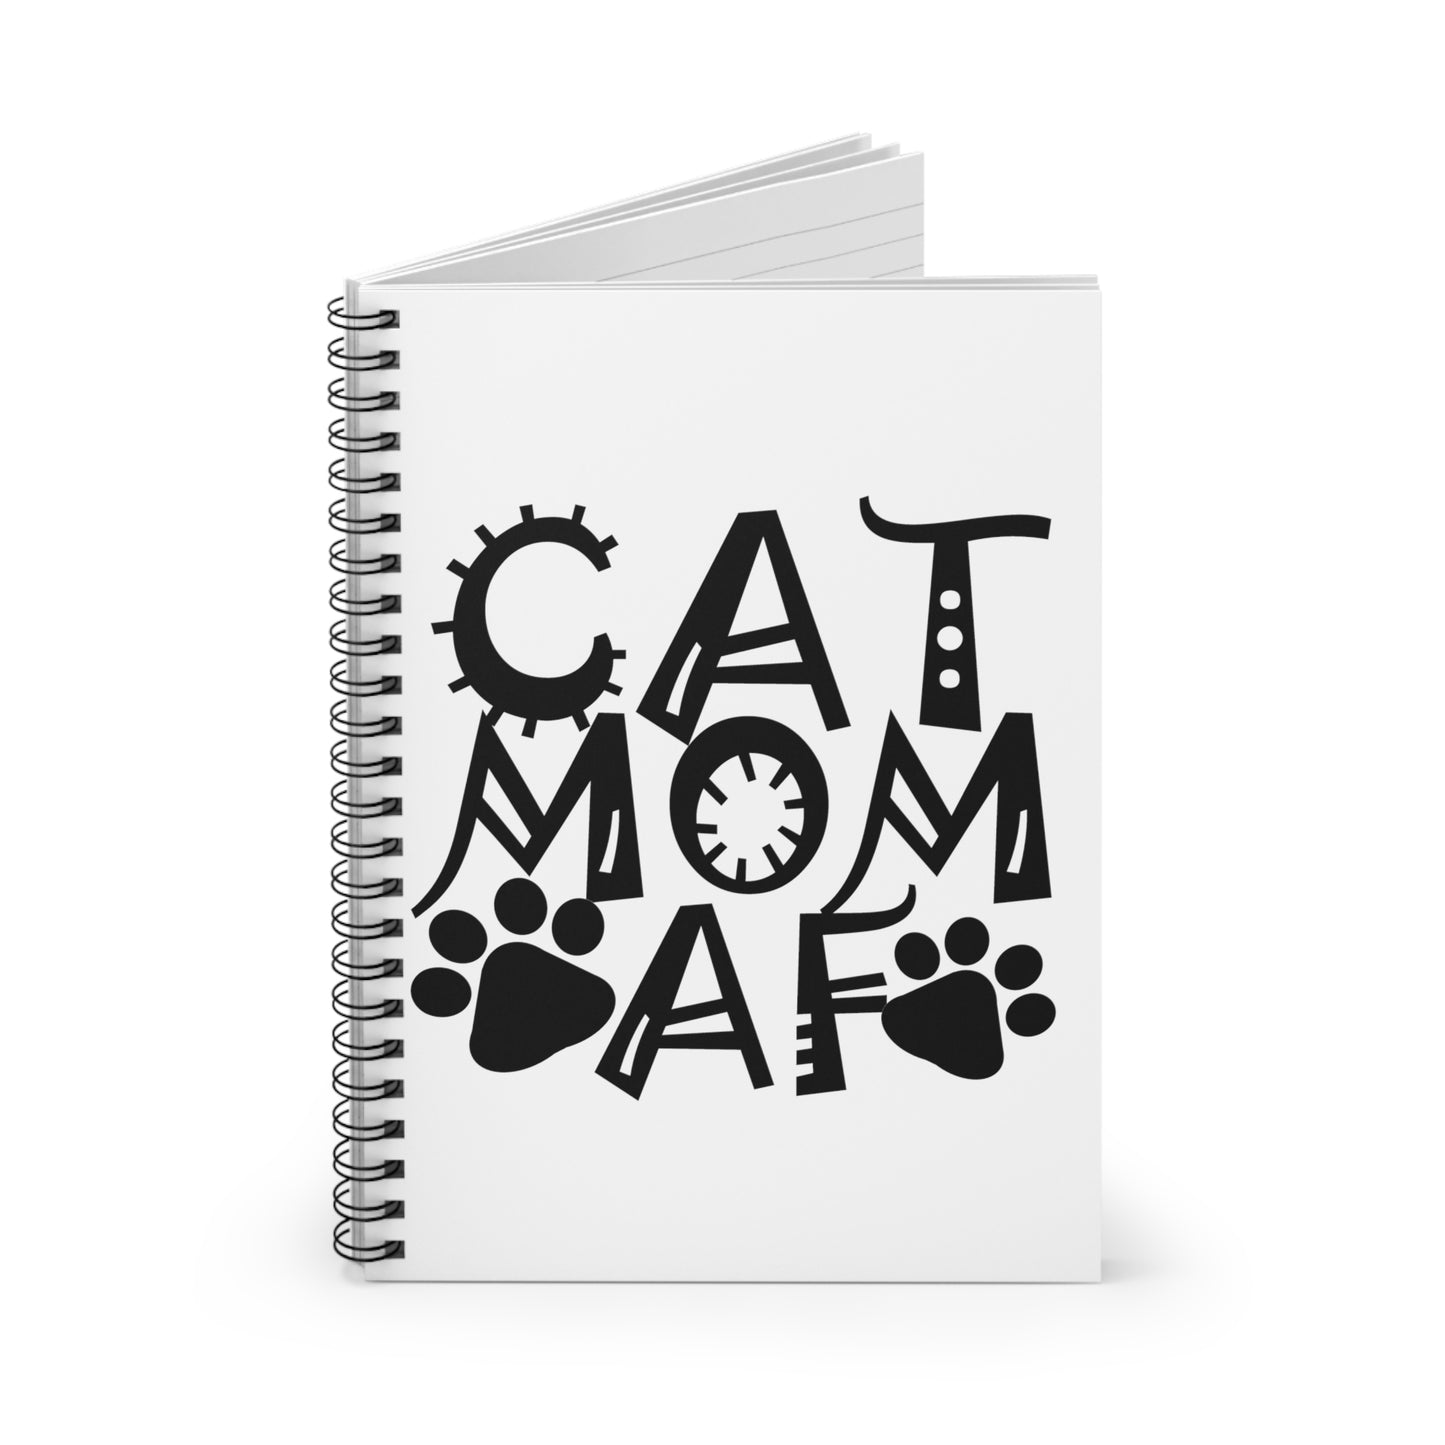 Cat Mom AF Spiral Notebook - Ruled Line